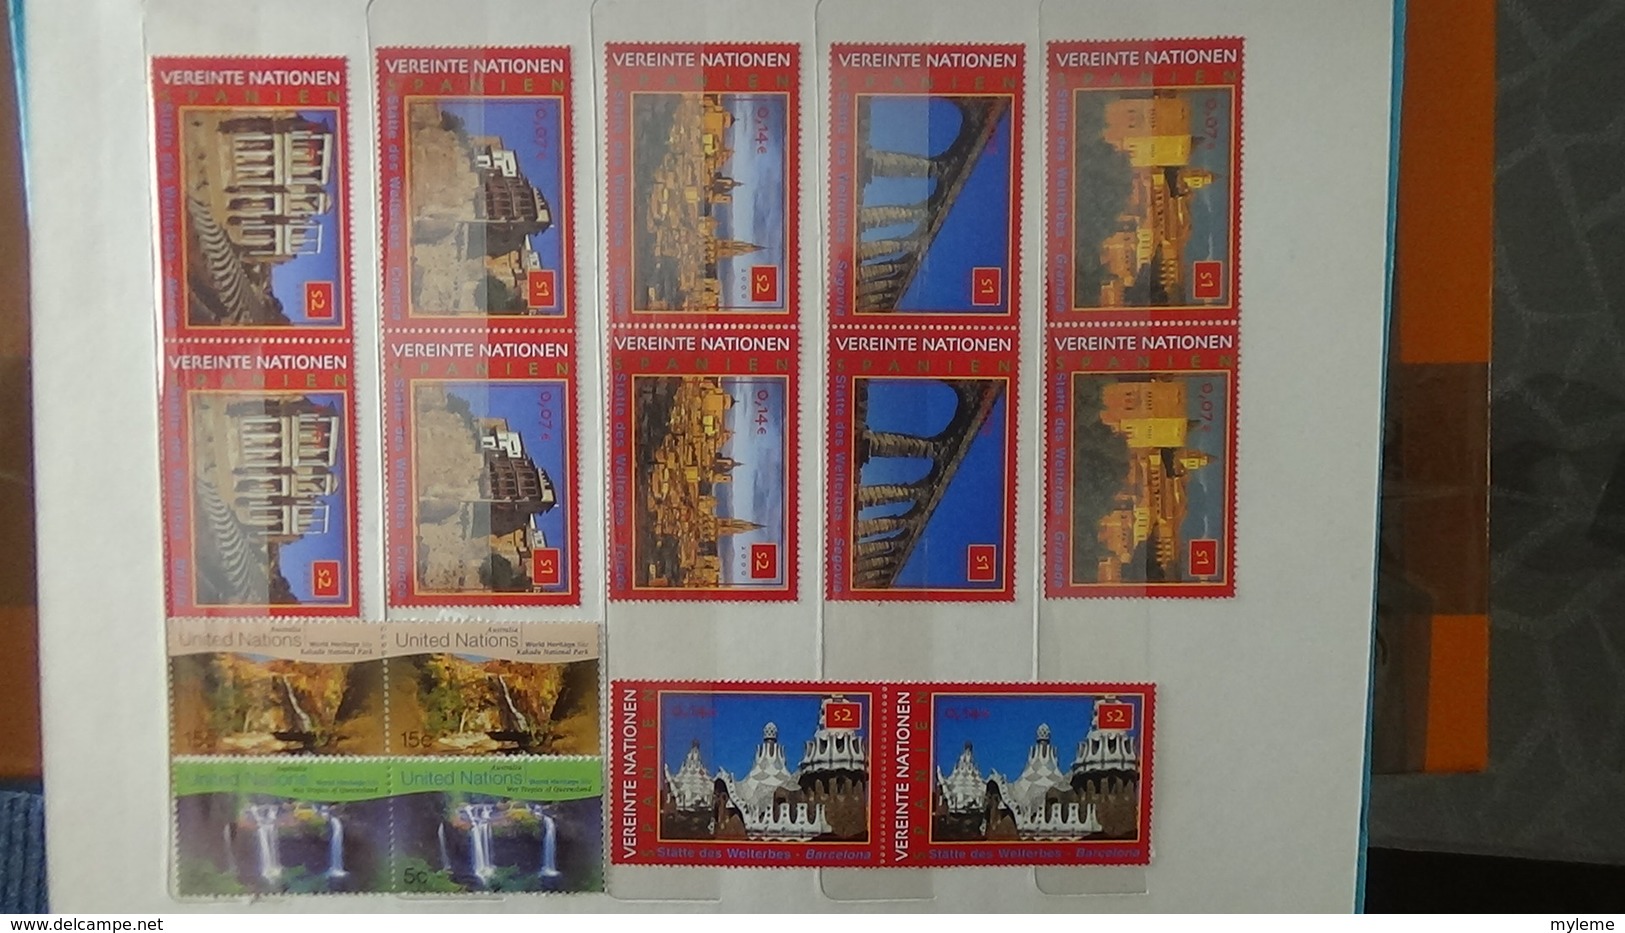 Collection timbres Andorre (bonne faciale en euro) ** + Espagne ** + Nations Unies ** + autres **